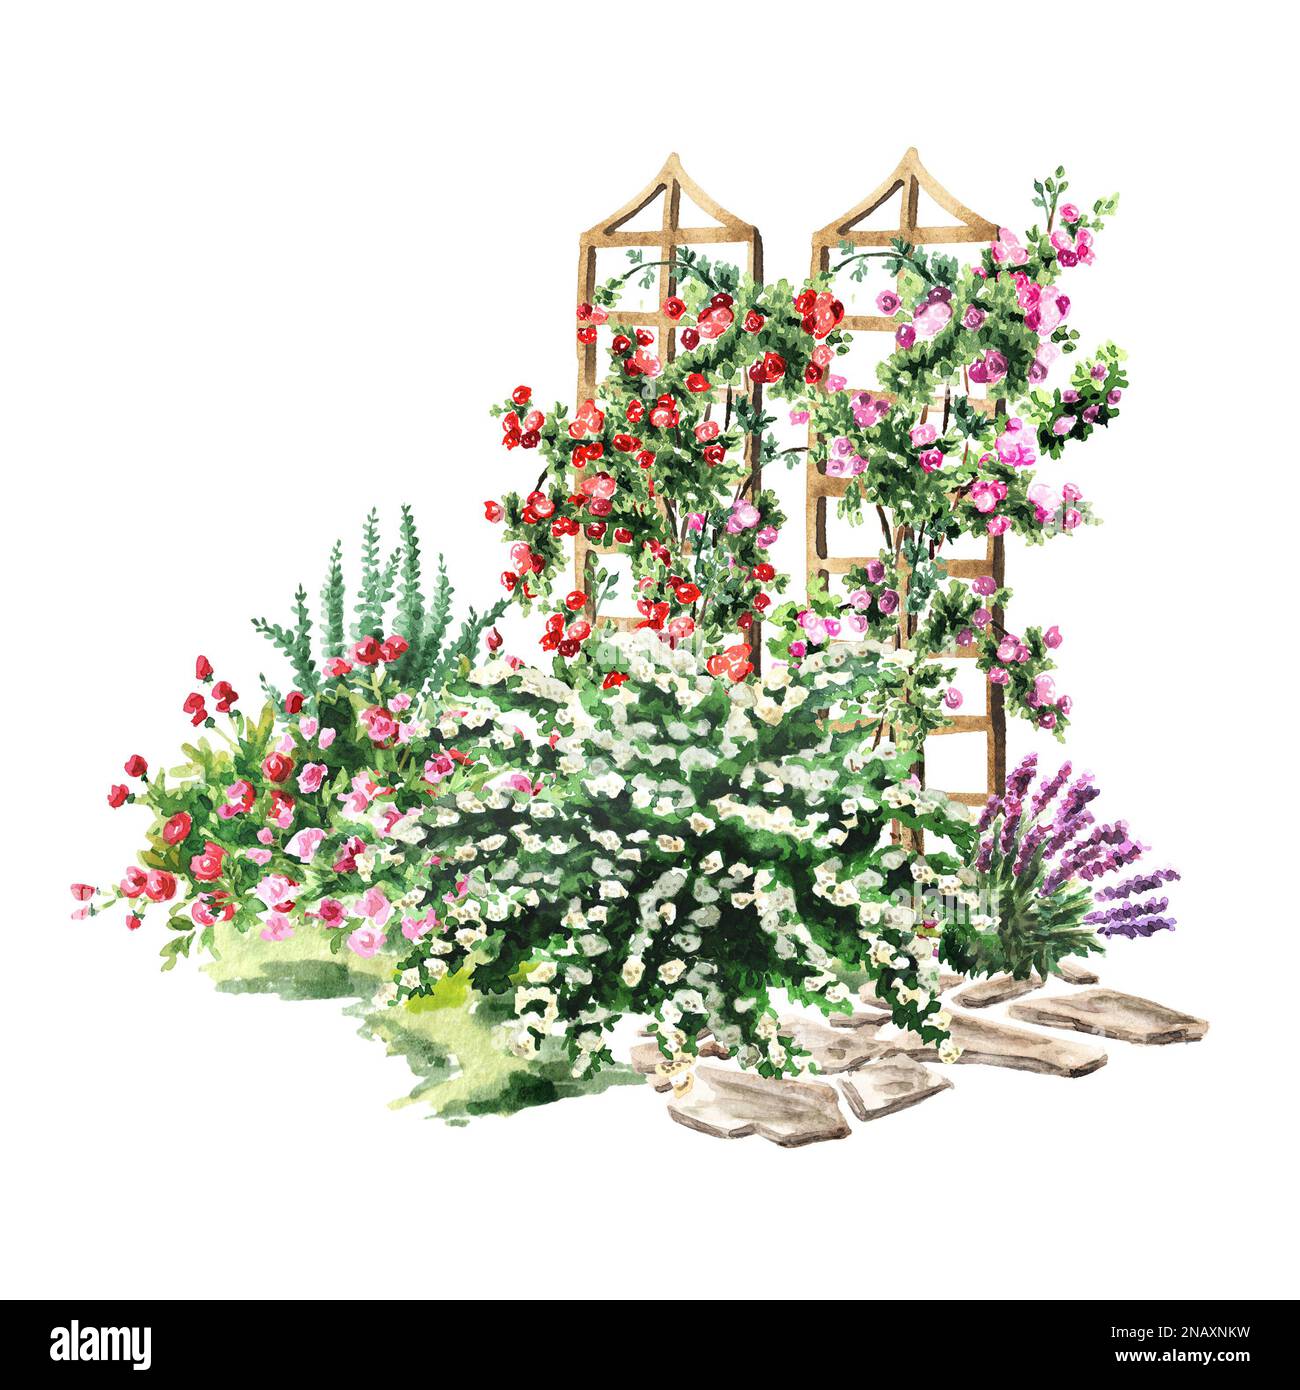 Gartenblumenbeet, Rosarium. Landschaftsdesign. Handgezeichnete Aquarelldarstellung isoliert auf weißem Hintergrund Stockfoto